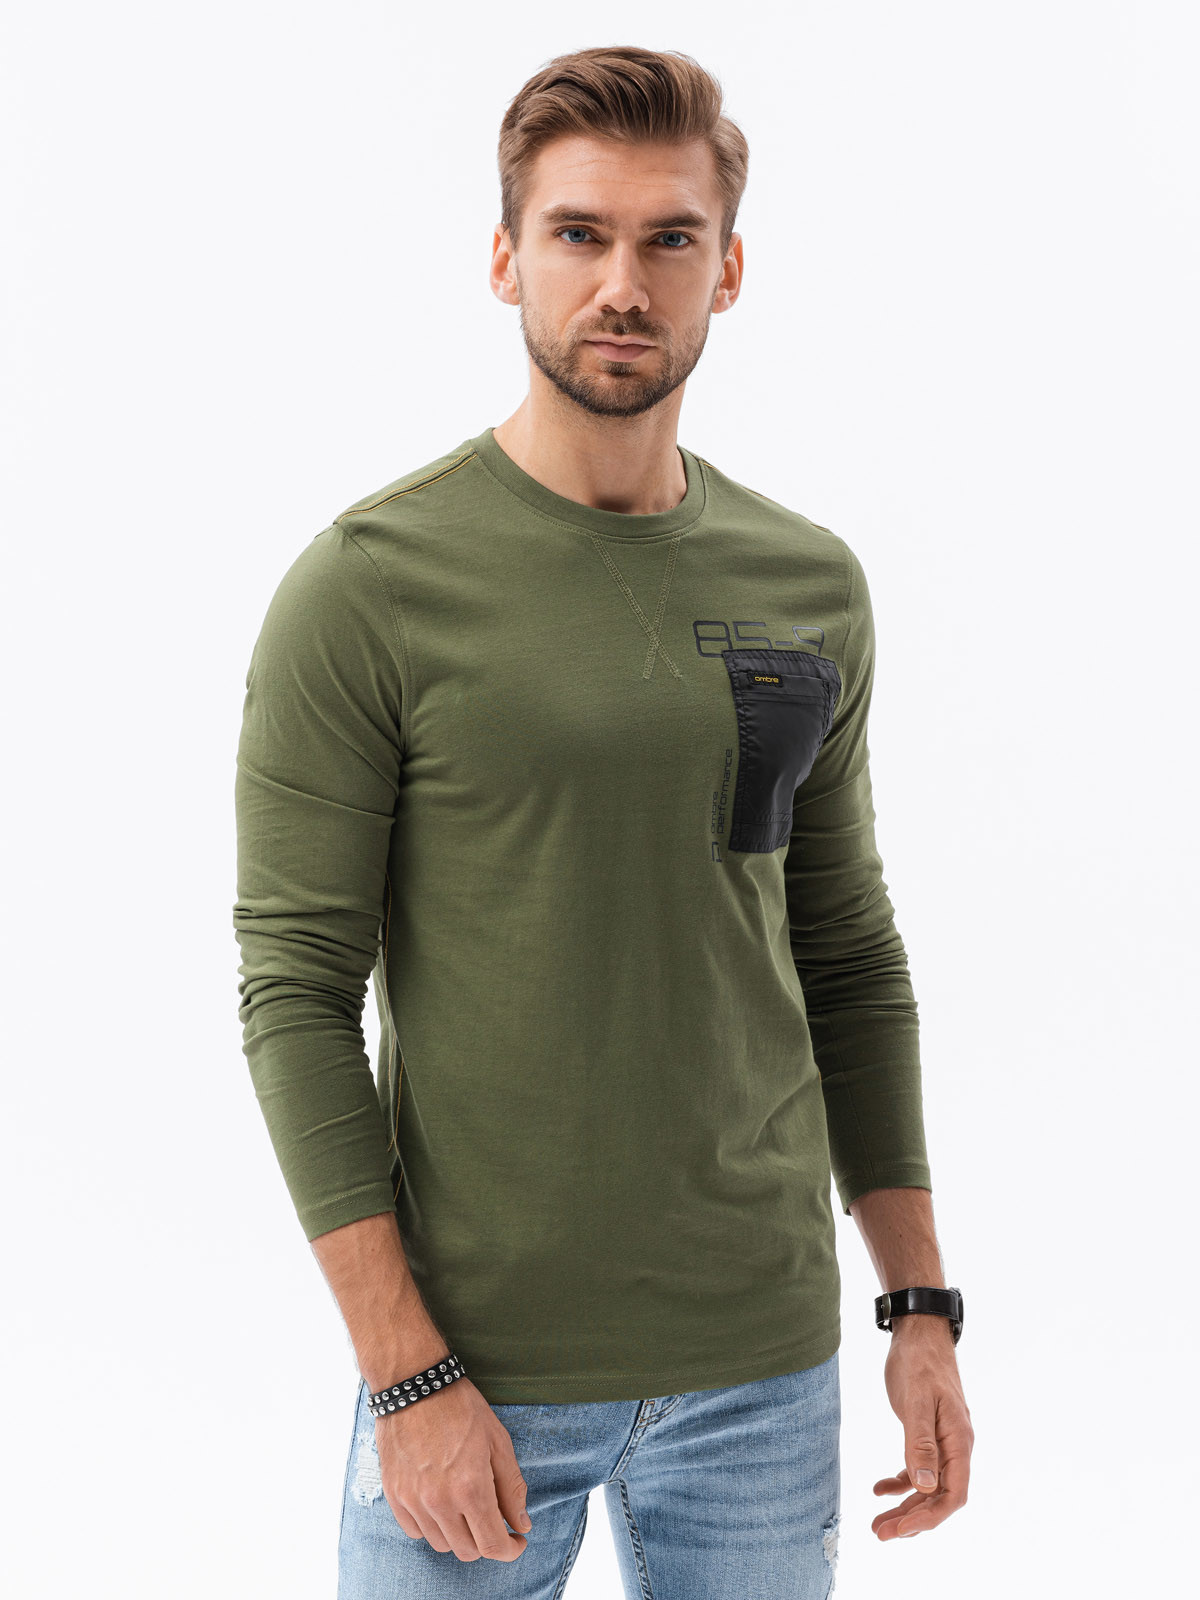 Chlapecké tričko s dlouhým rukávem a potiskem - olivová L130